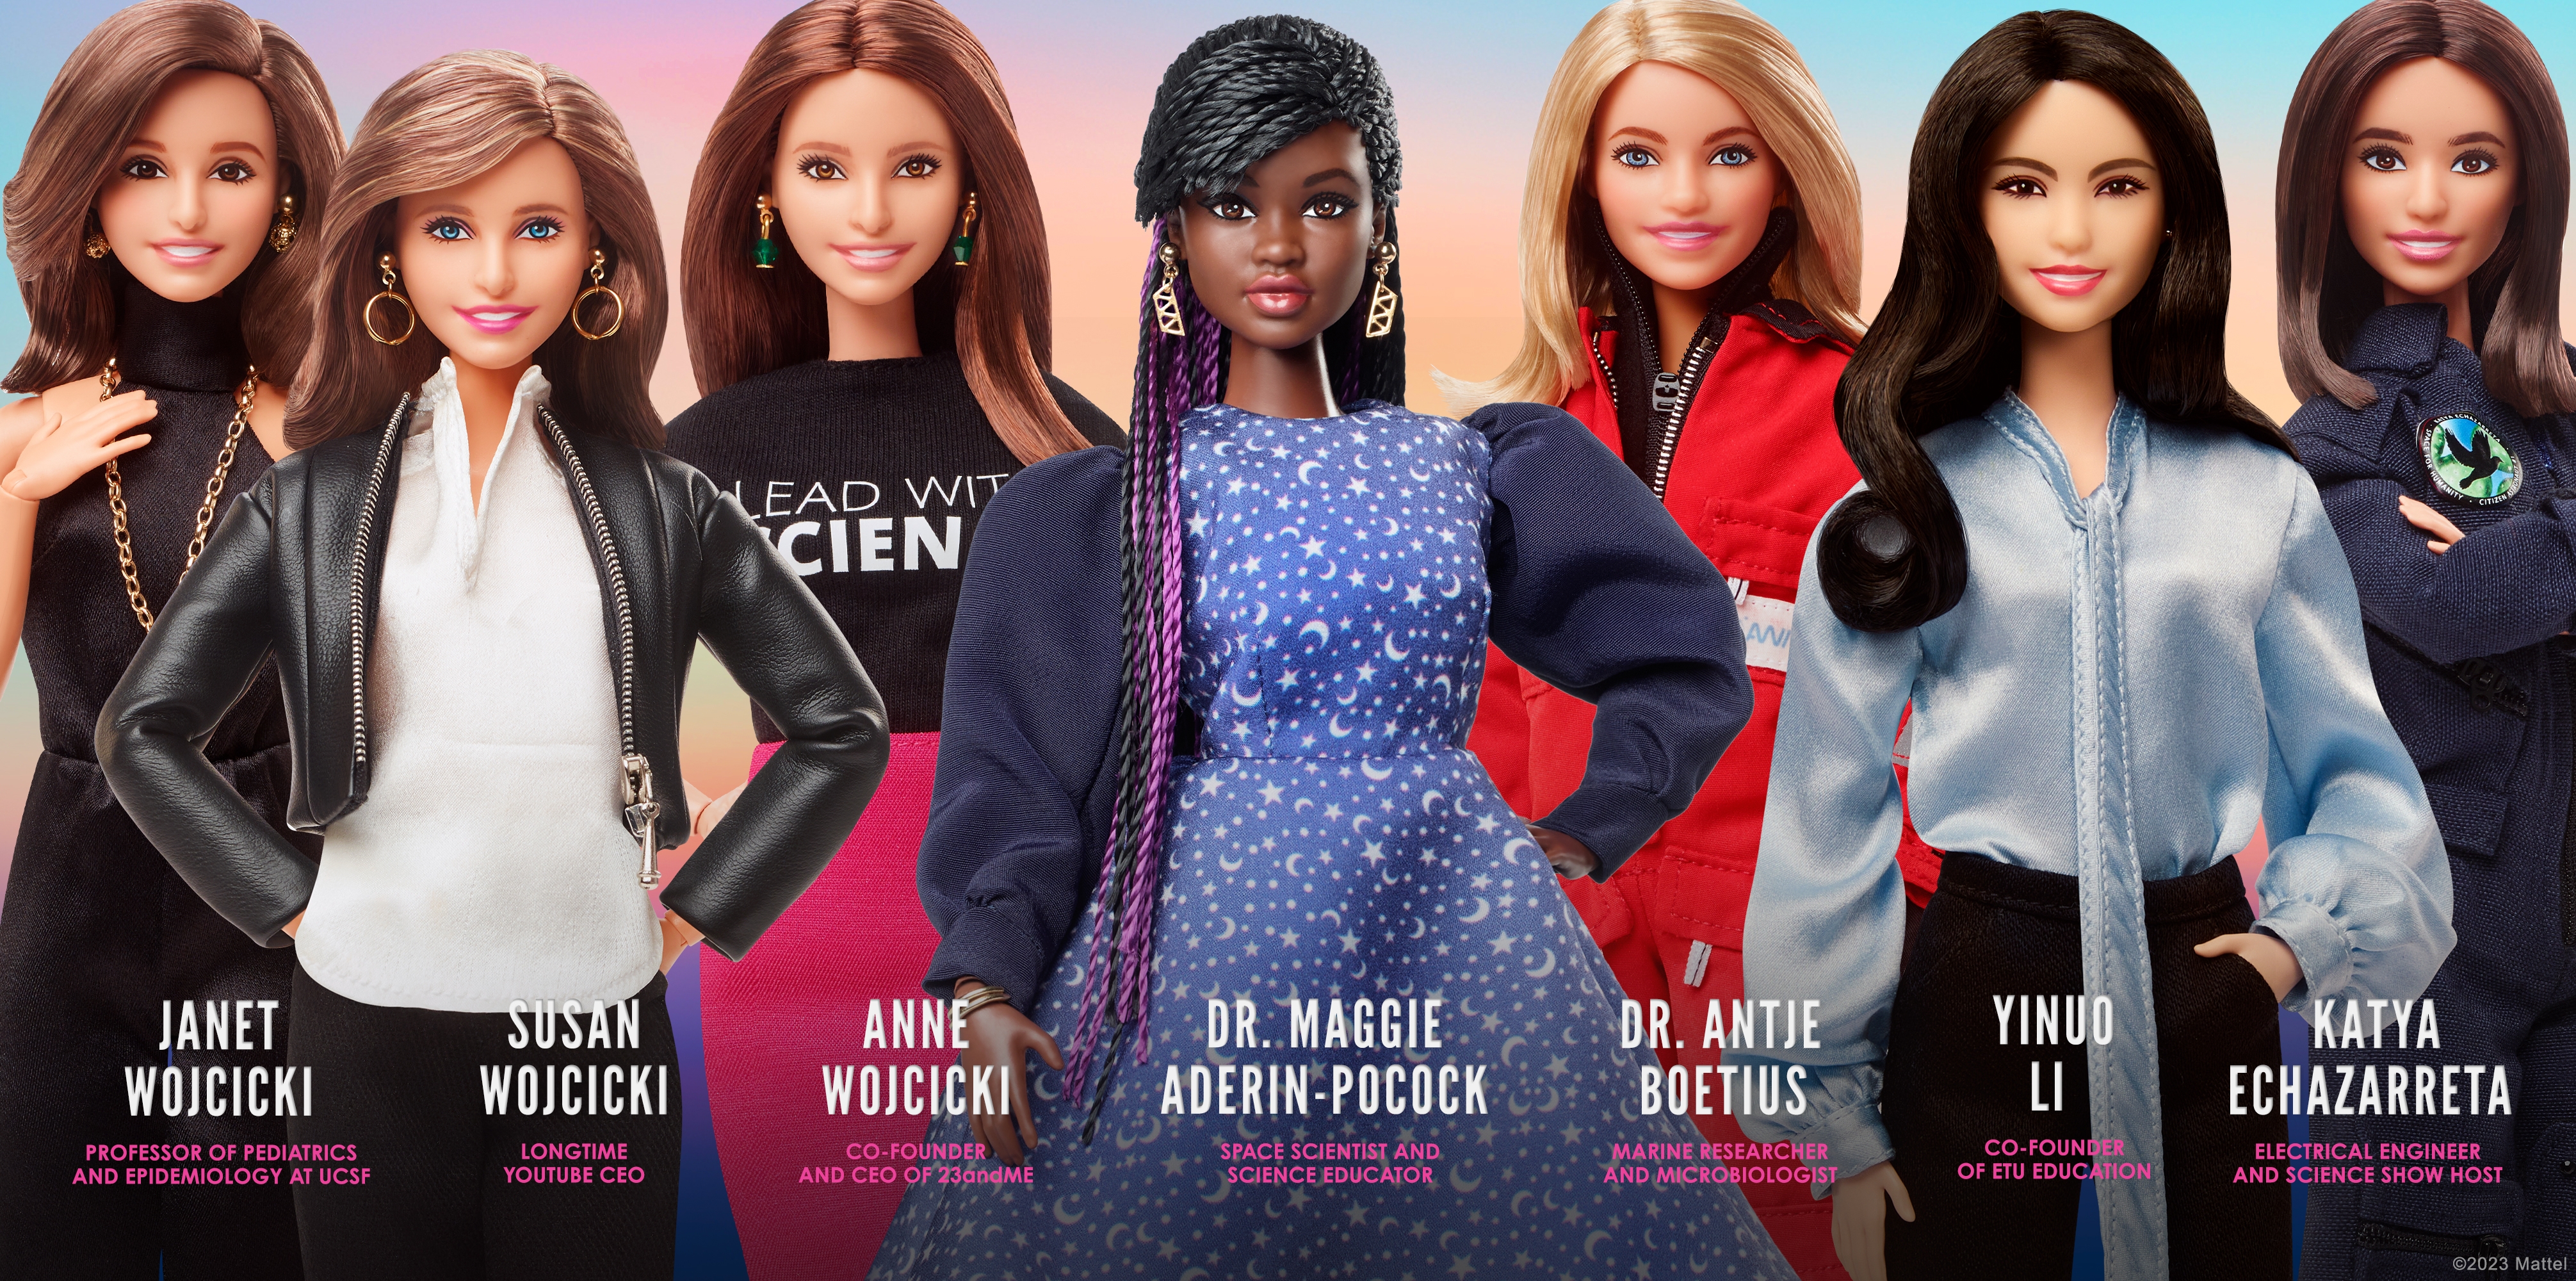 chisme Conductividad Resolver Día de la mujer: Barbie presenta 'Modelos a seguir', que incluye a la  astronauta Katya Echazarreta y otras líderes científicas | Diseño | La  Revista | El Universo